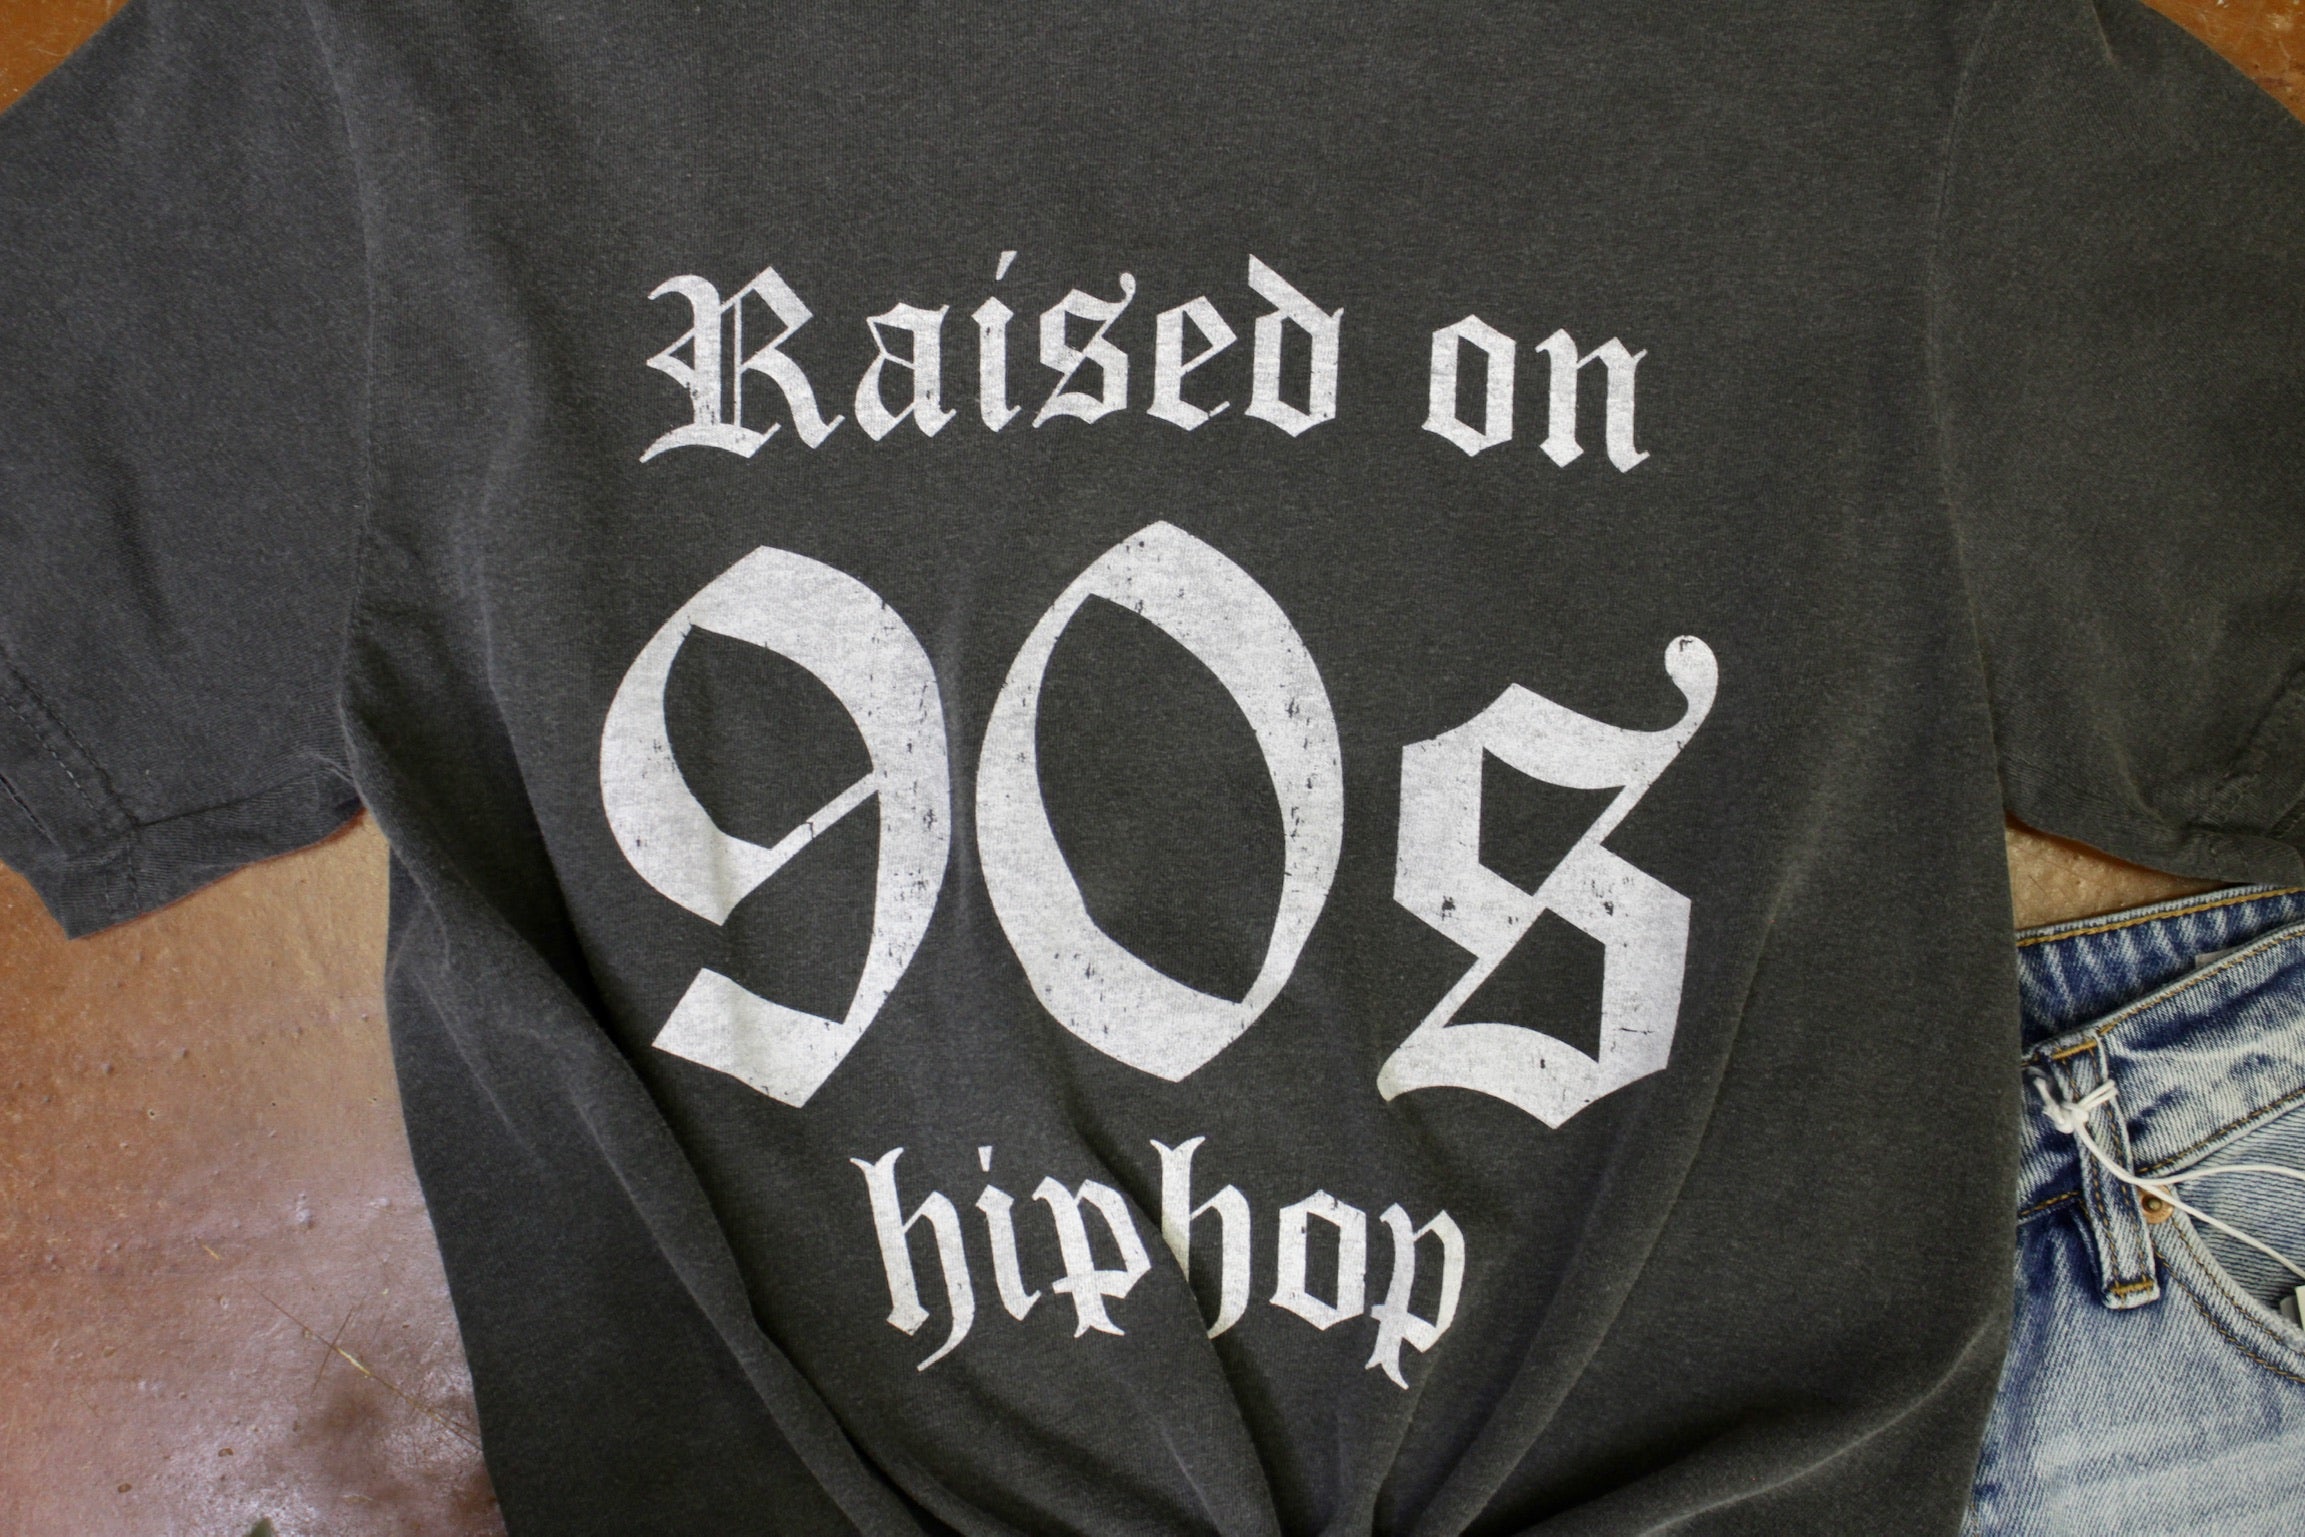 Raised on 90's Hip Hop Tee